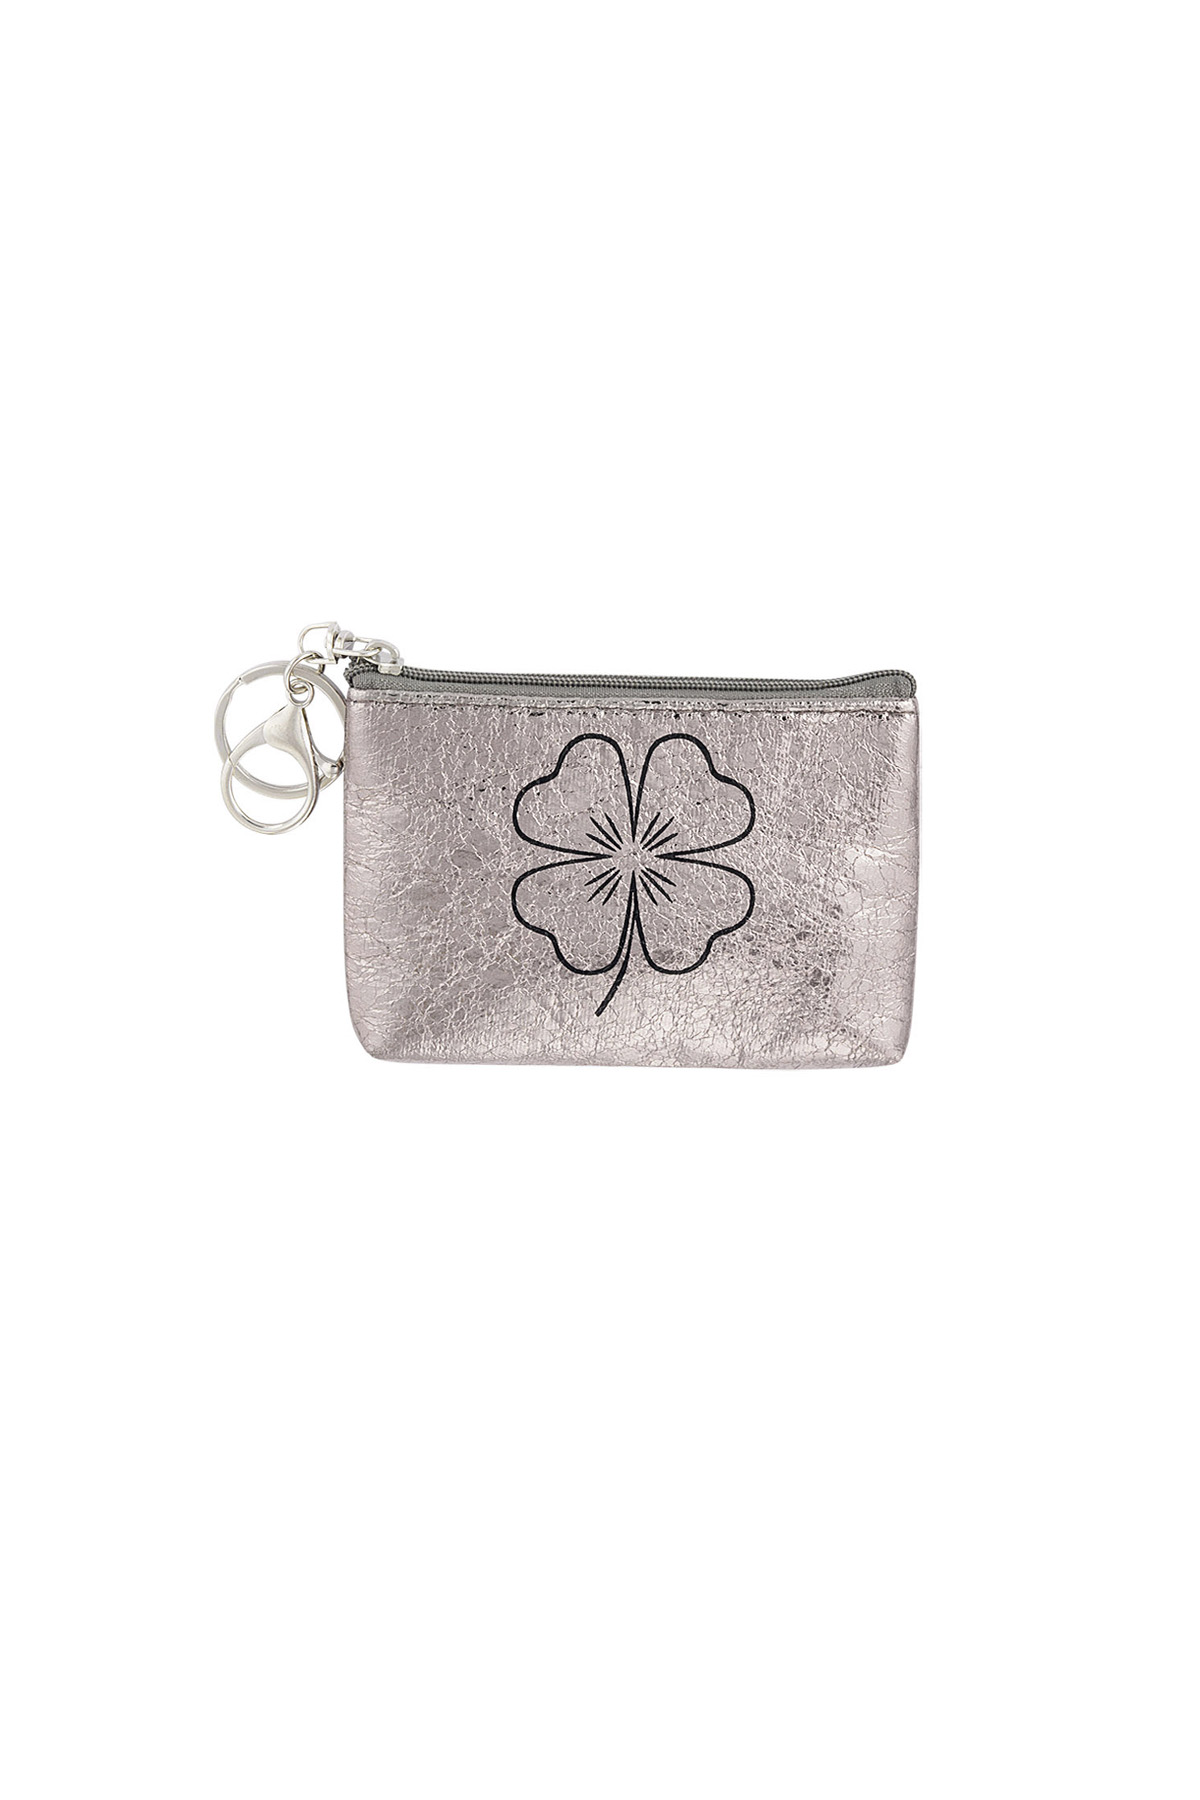 Anahtarlık cüzdan metalik yonca - gümüş